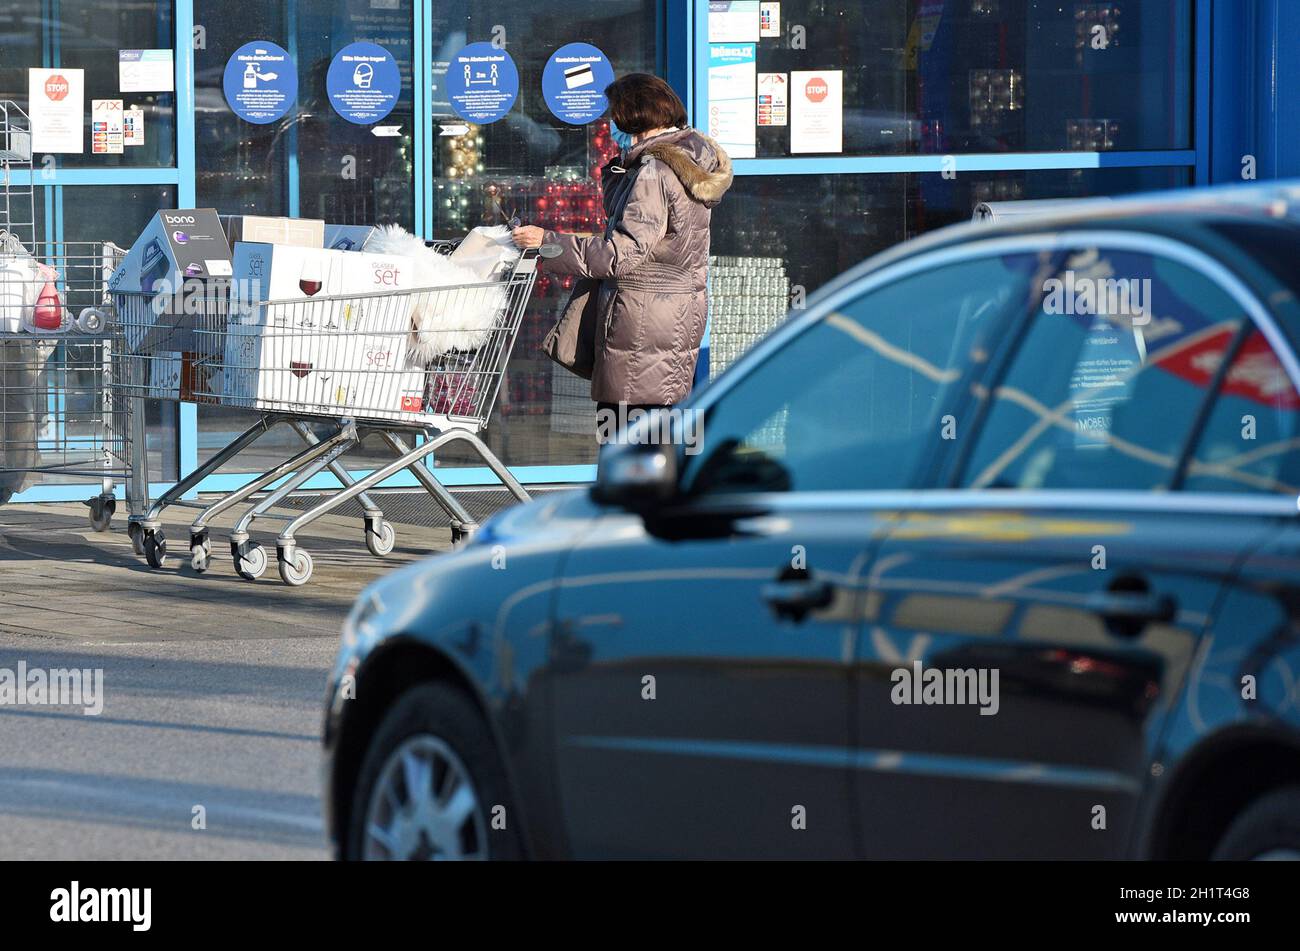 Ansturm auf Einkaufszentren nach dem Lockdown in Österreich, Europa - Rush to shopping malls after the lockdown in Austria, Europe Stock Photo